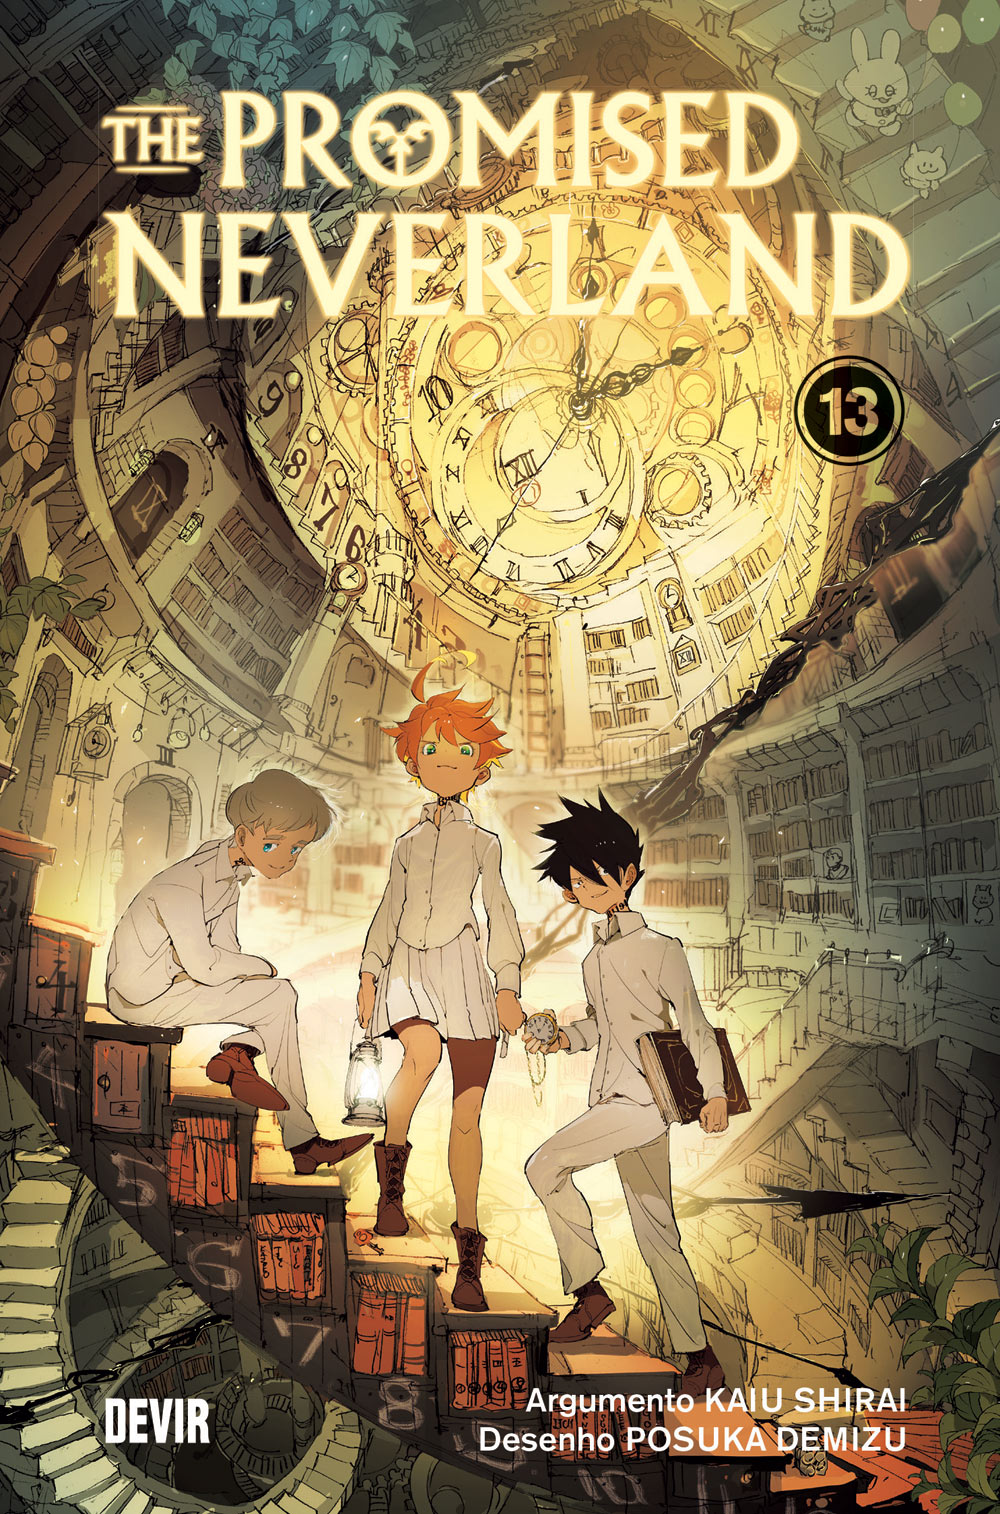  Nova temporada de 'The Promised Neverland' ganha data  de estreia